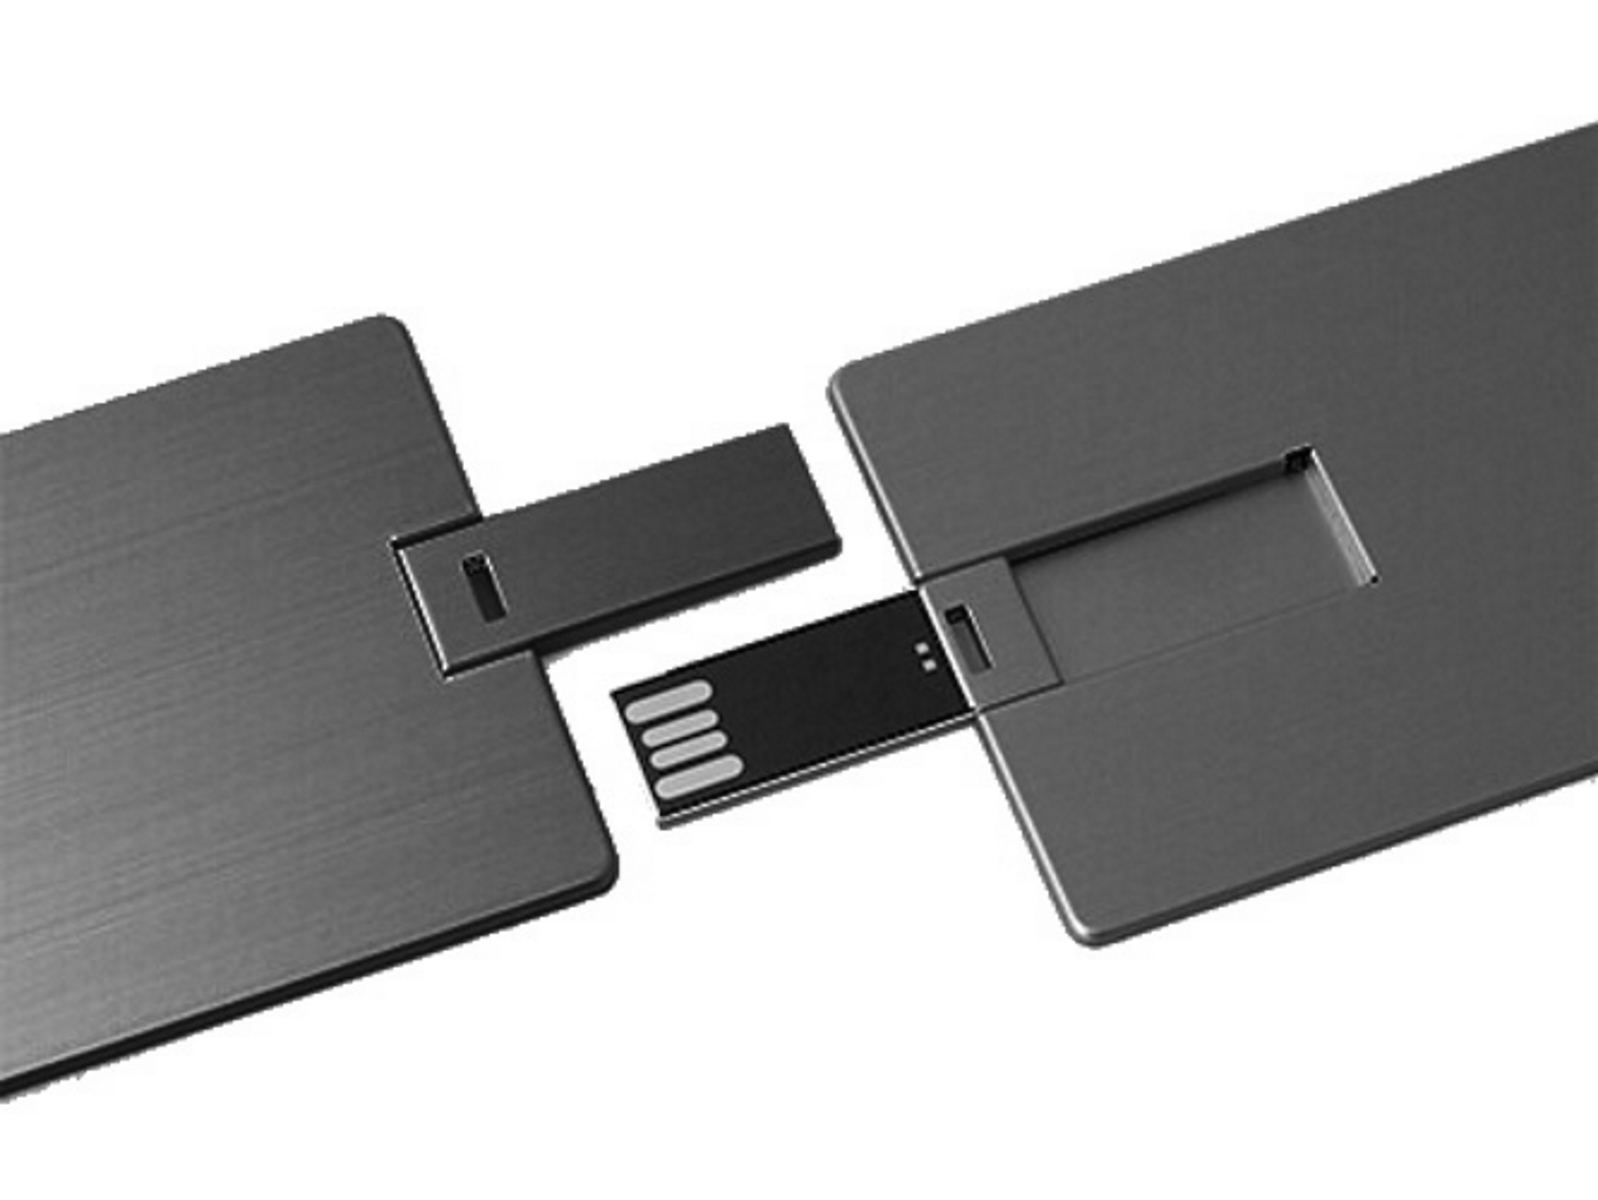 USB GERMANY ® Metall-Kreditkarte USB-Stick GB) 2 (Schwarz